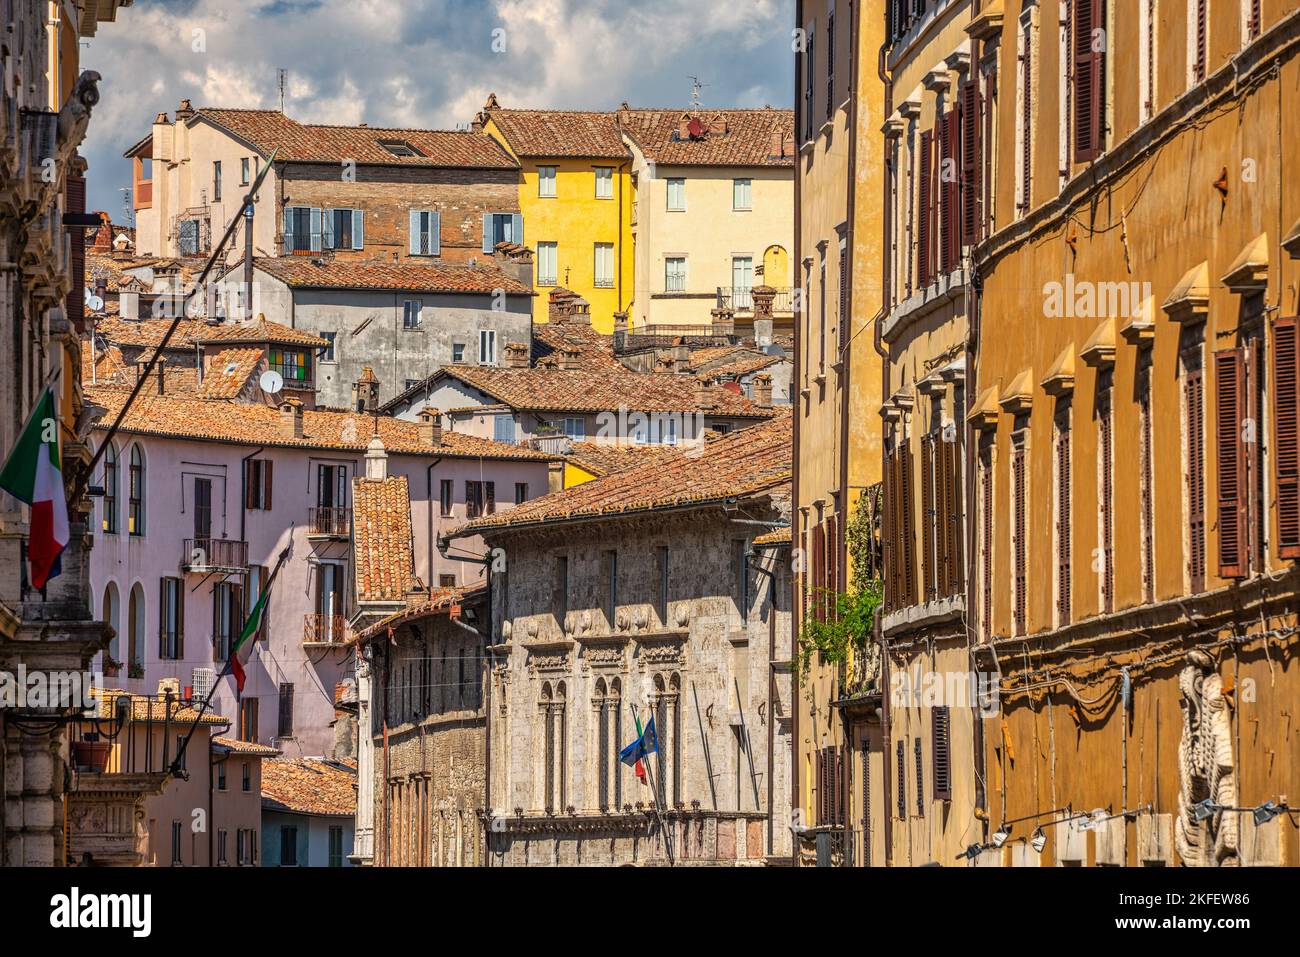 Paläste und historische Häuser mit Stilen aus verschiedenen Epochen in der mittelalterlichen Stadt Perugia. Perugia, Umbrien, Italien, Europa Stockfoto